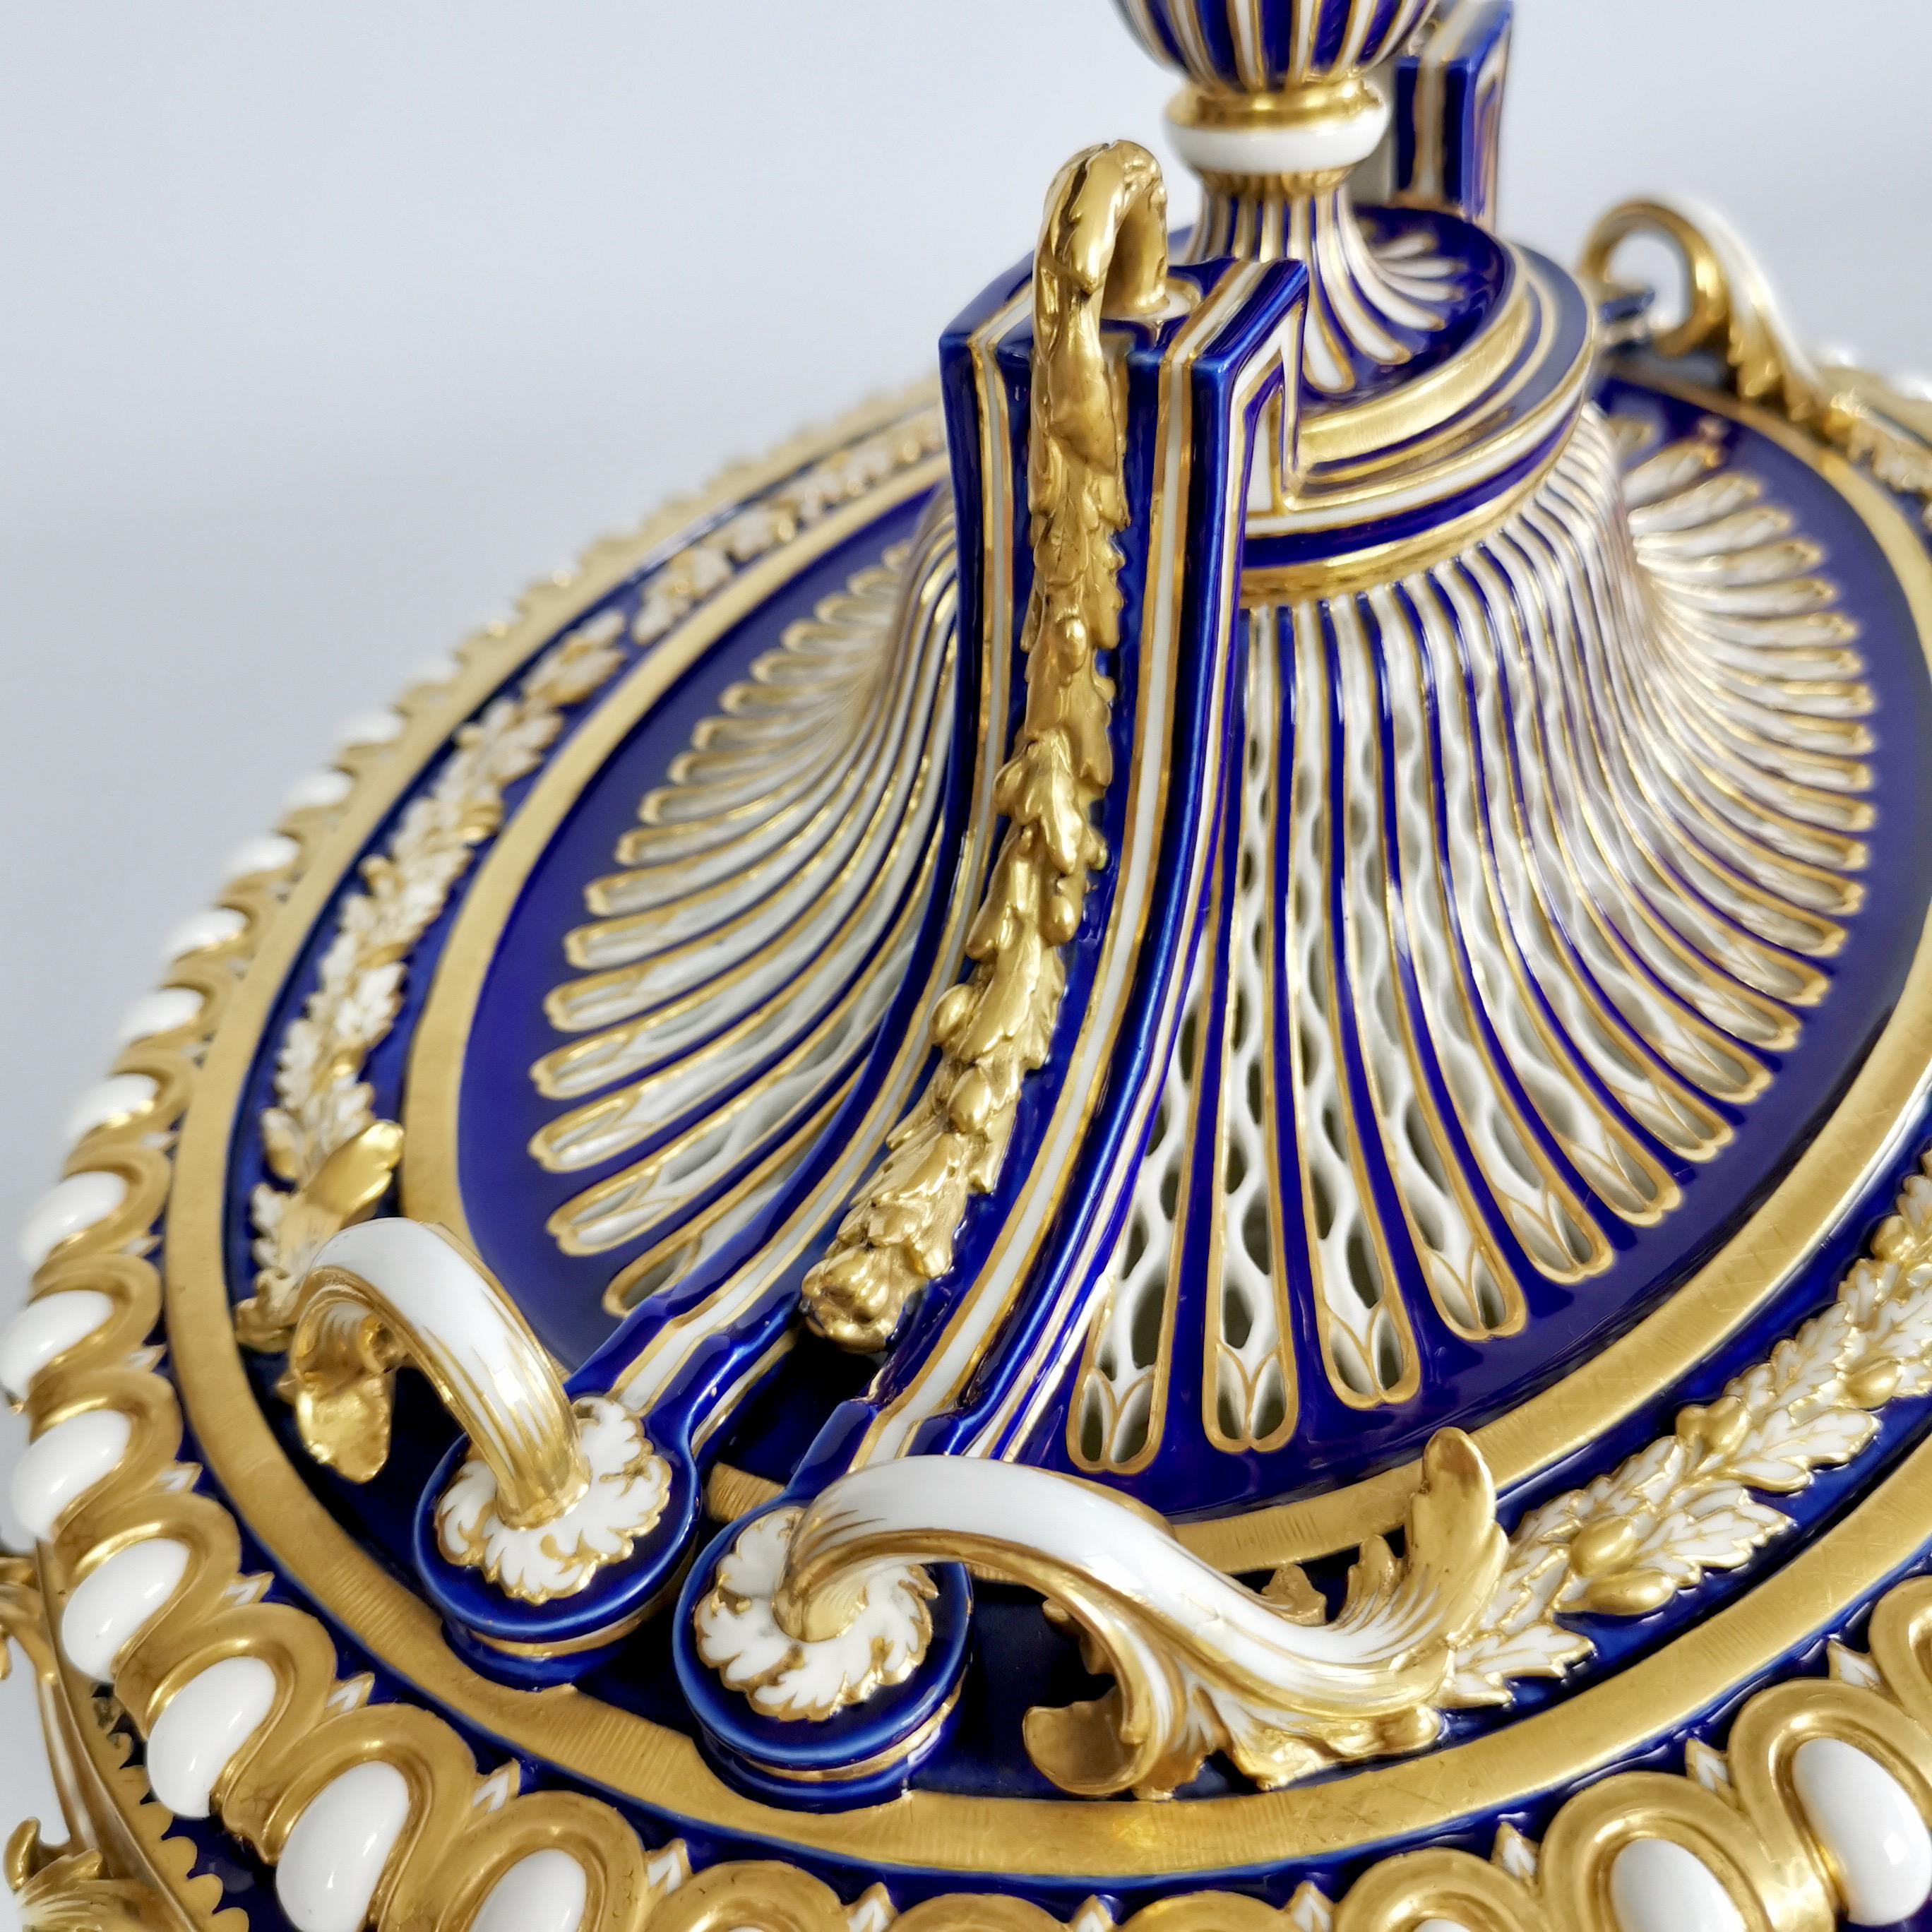 Minton Porcelain Centre Piece, Mazarine Blue with Gilt, Sèvres Style, 1862-1870 For Sale 1